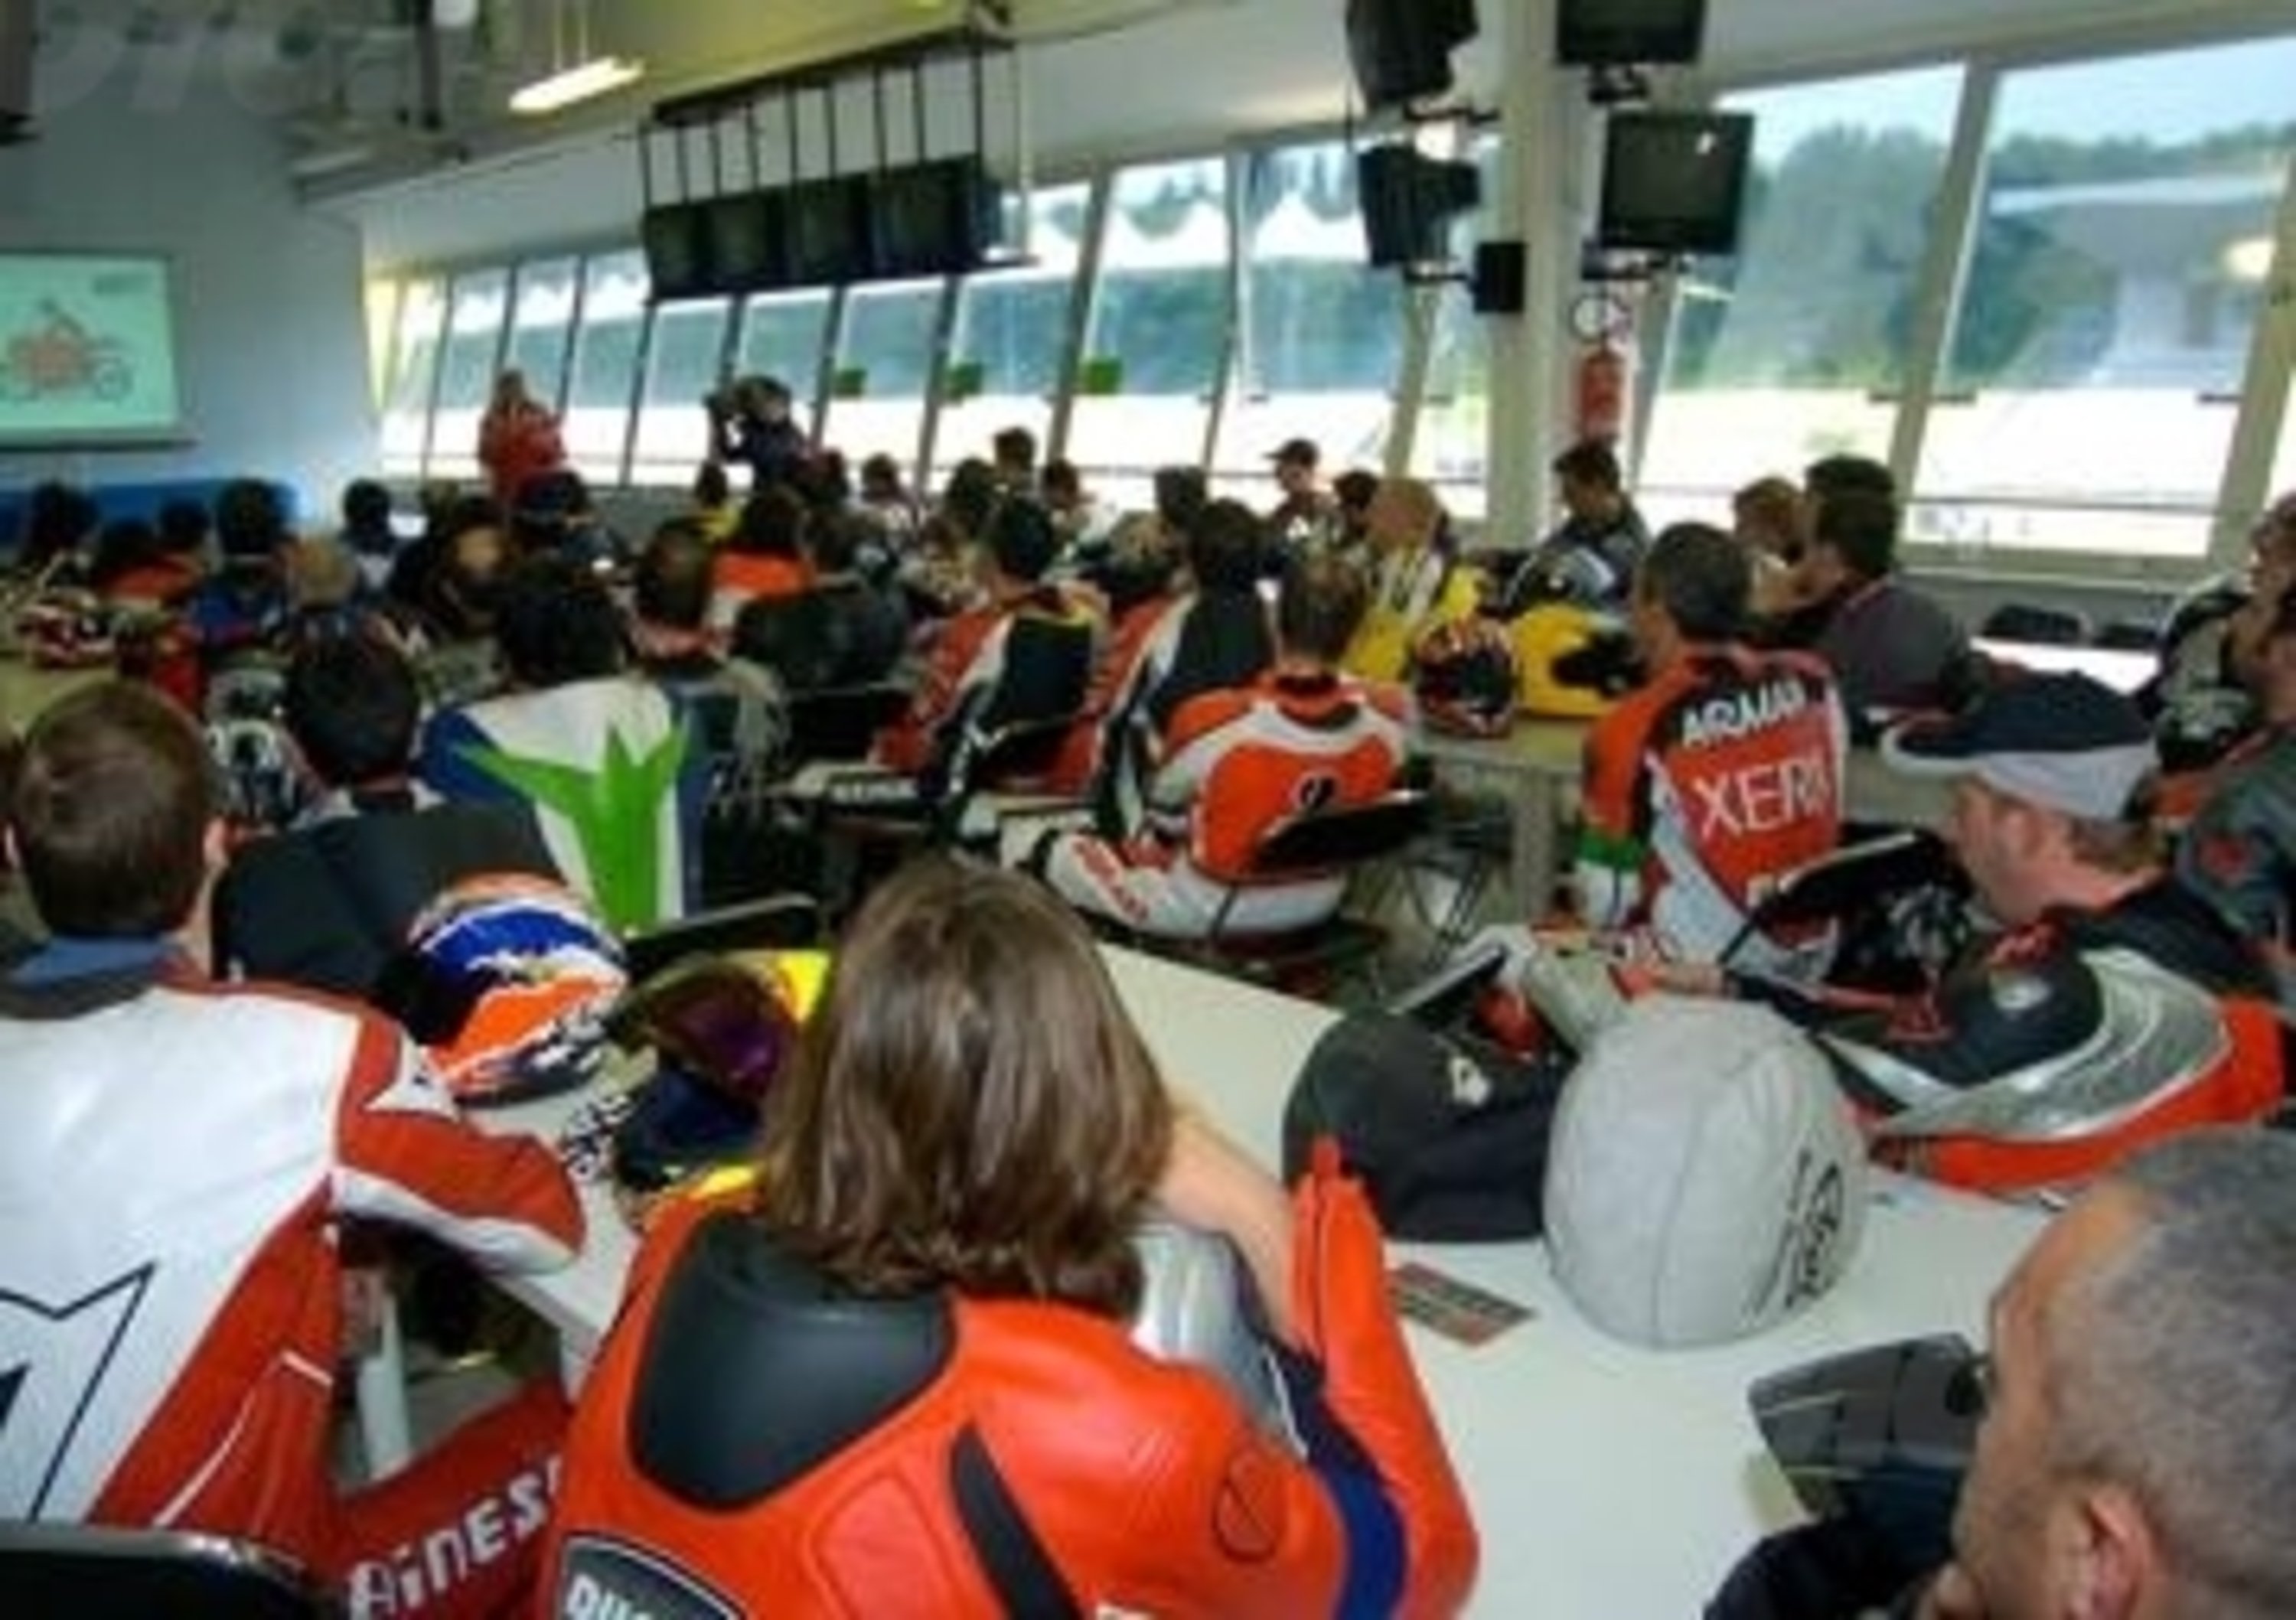 Ducati Riding Experience, il 16 dicembre aprono le iscrizioni